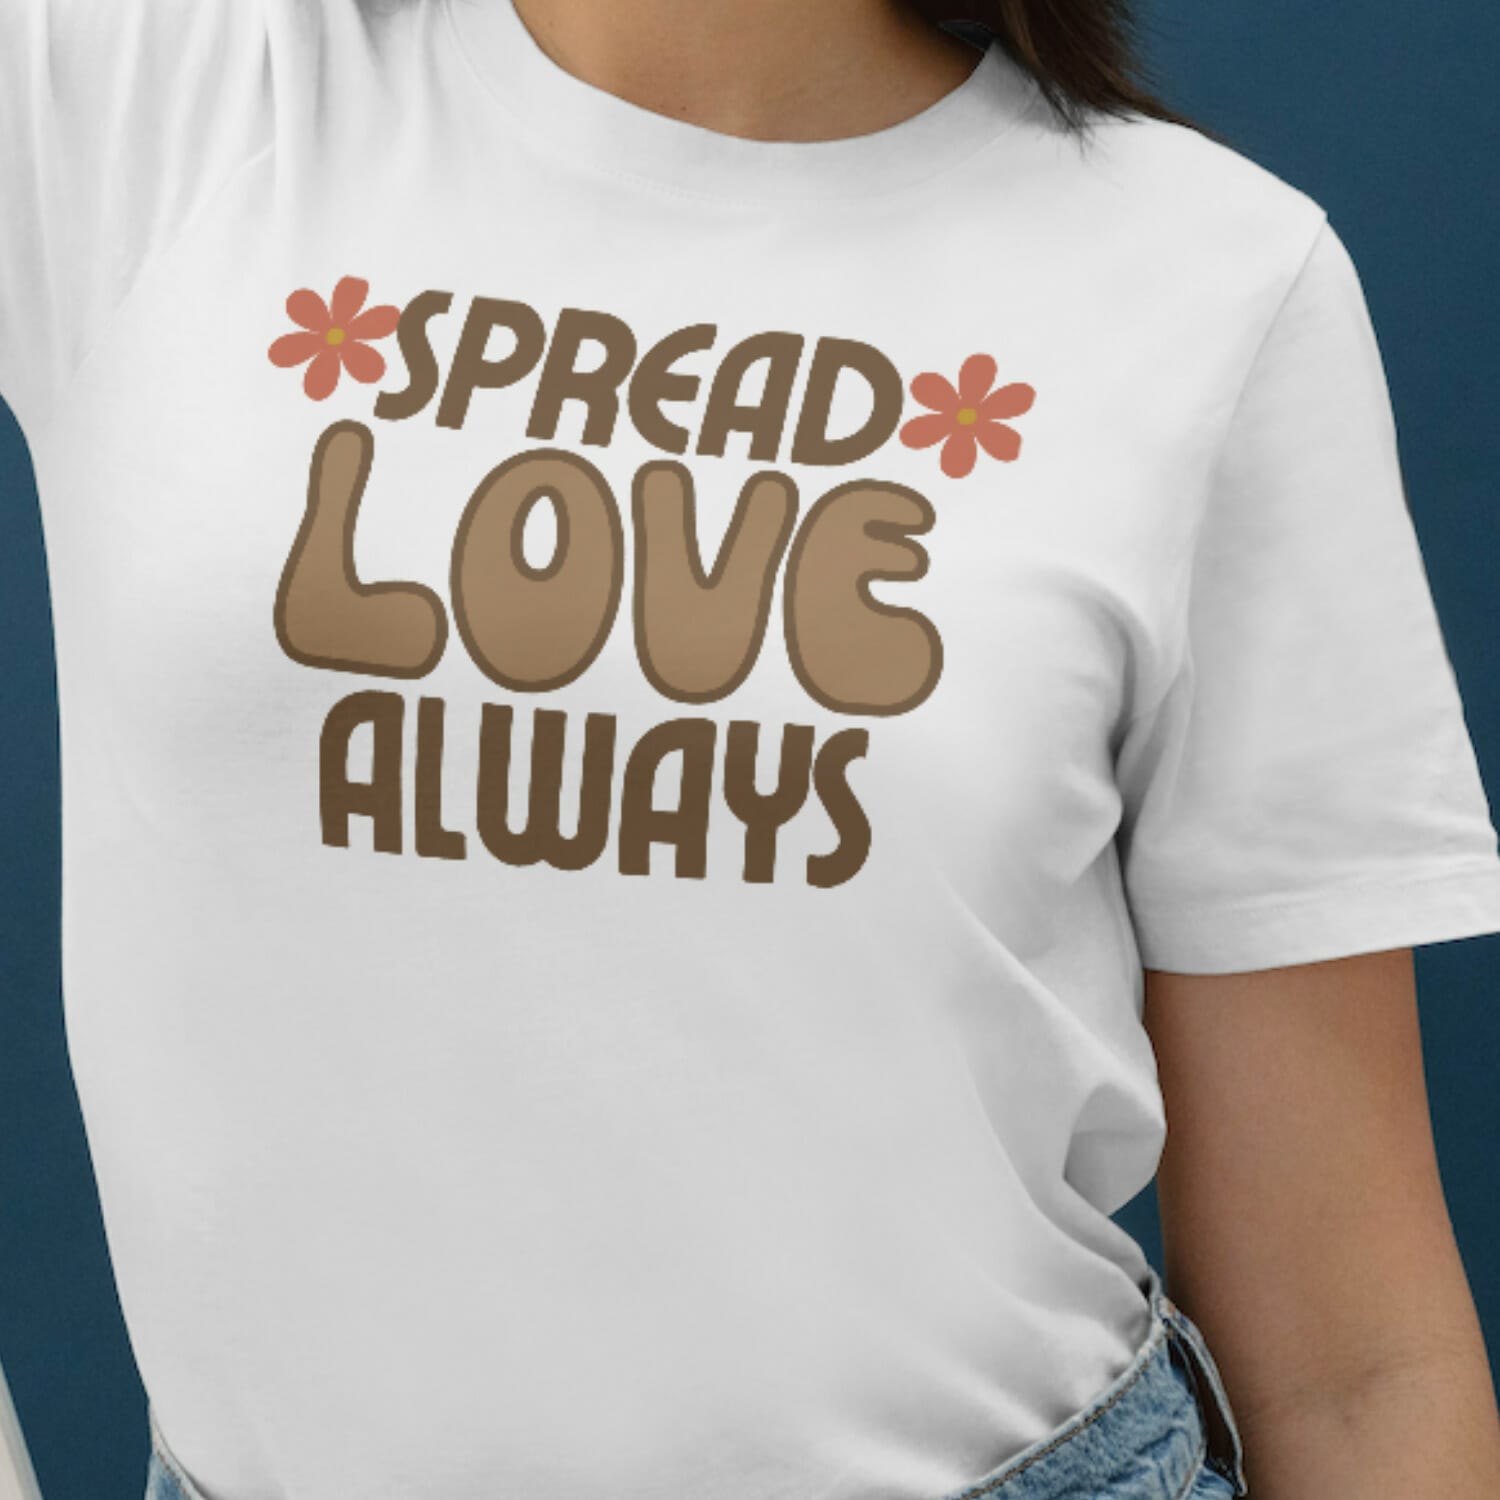 Spread Love Always T-shirt Design